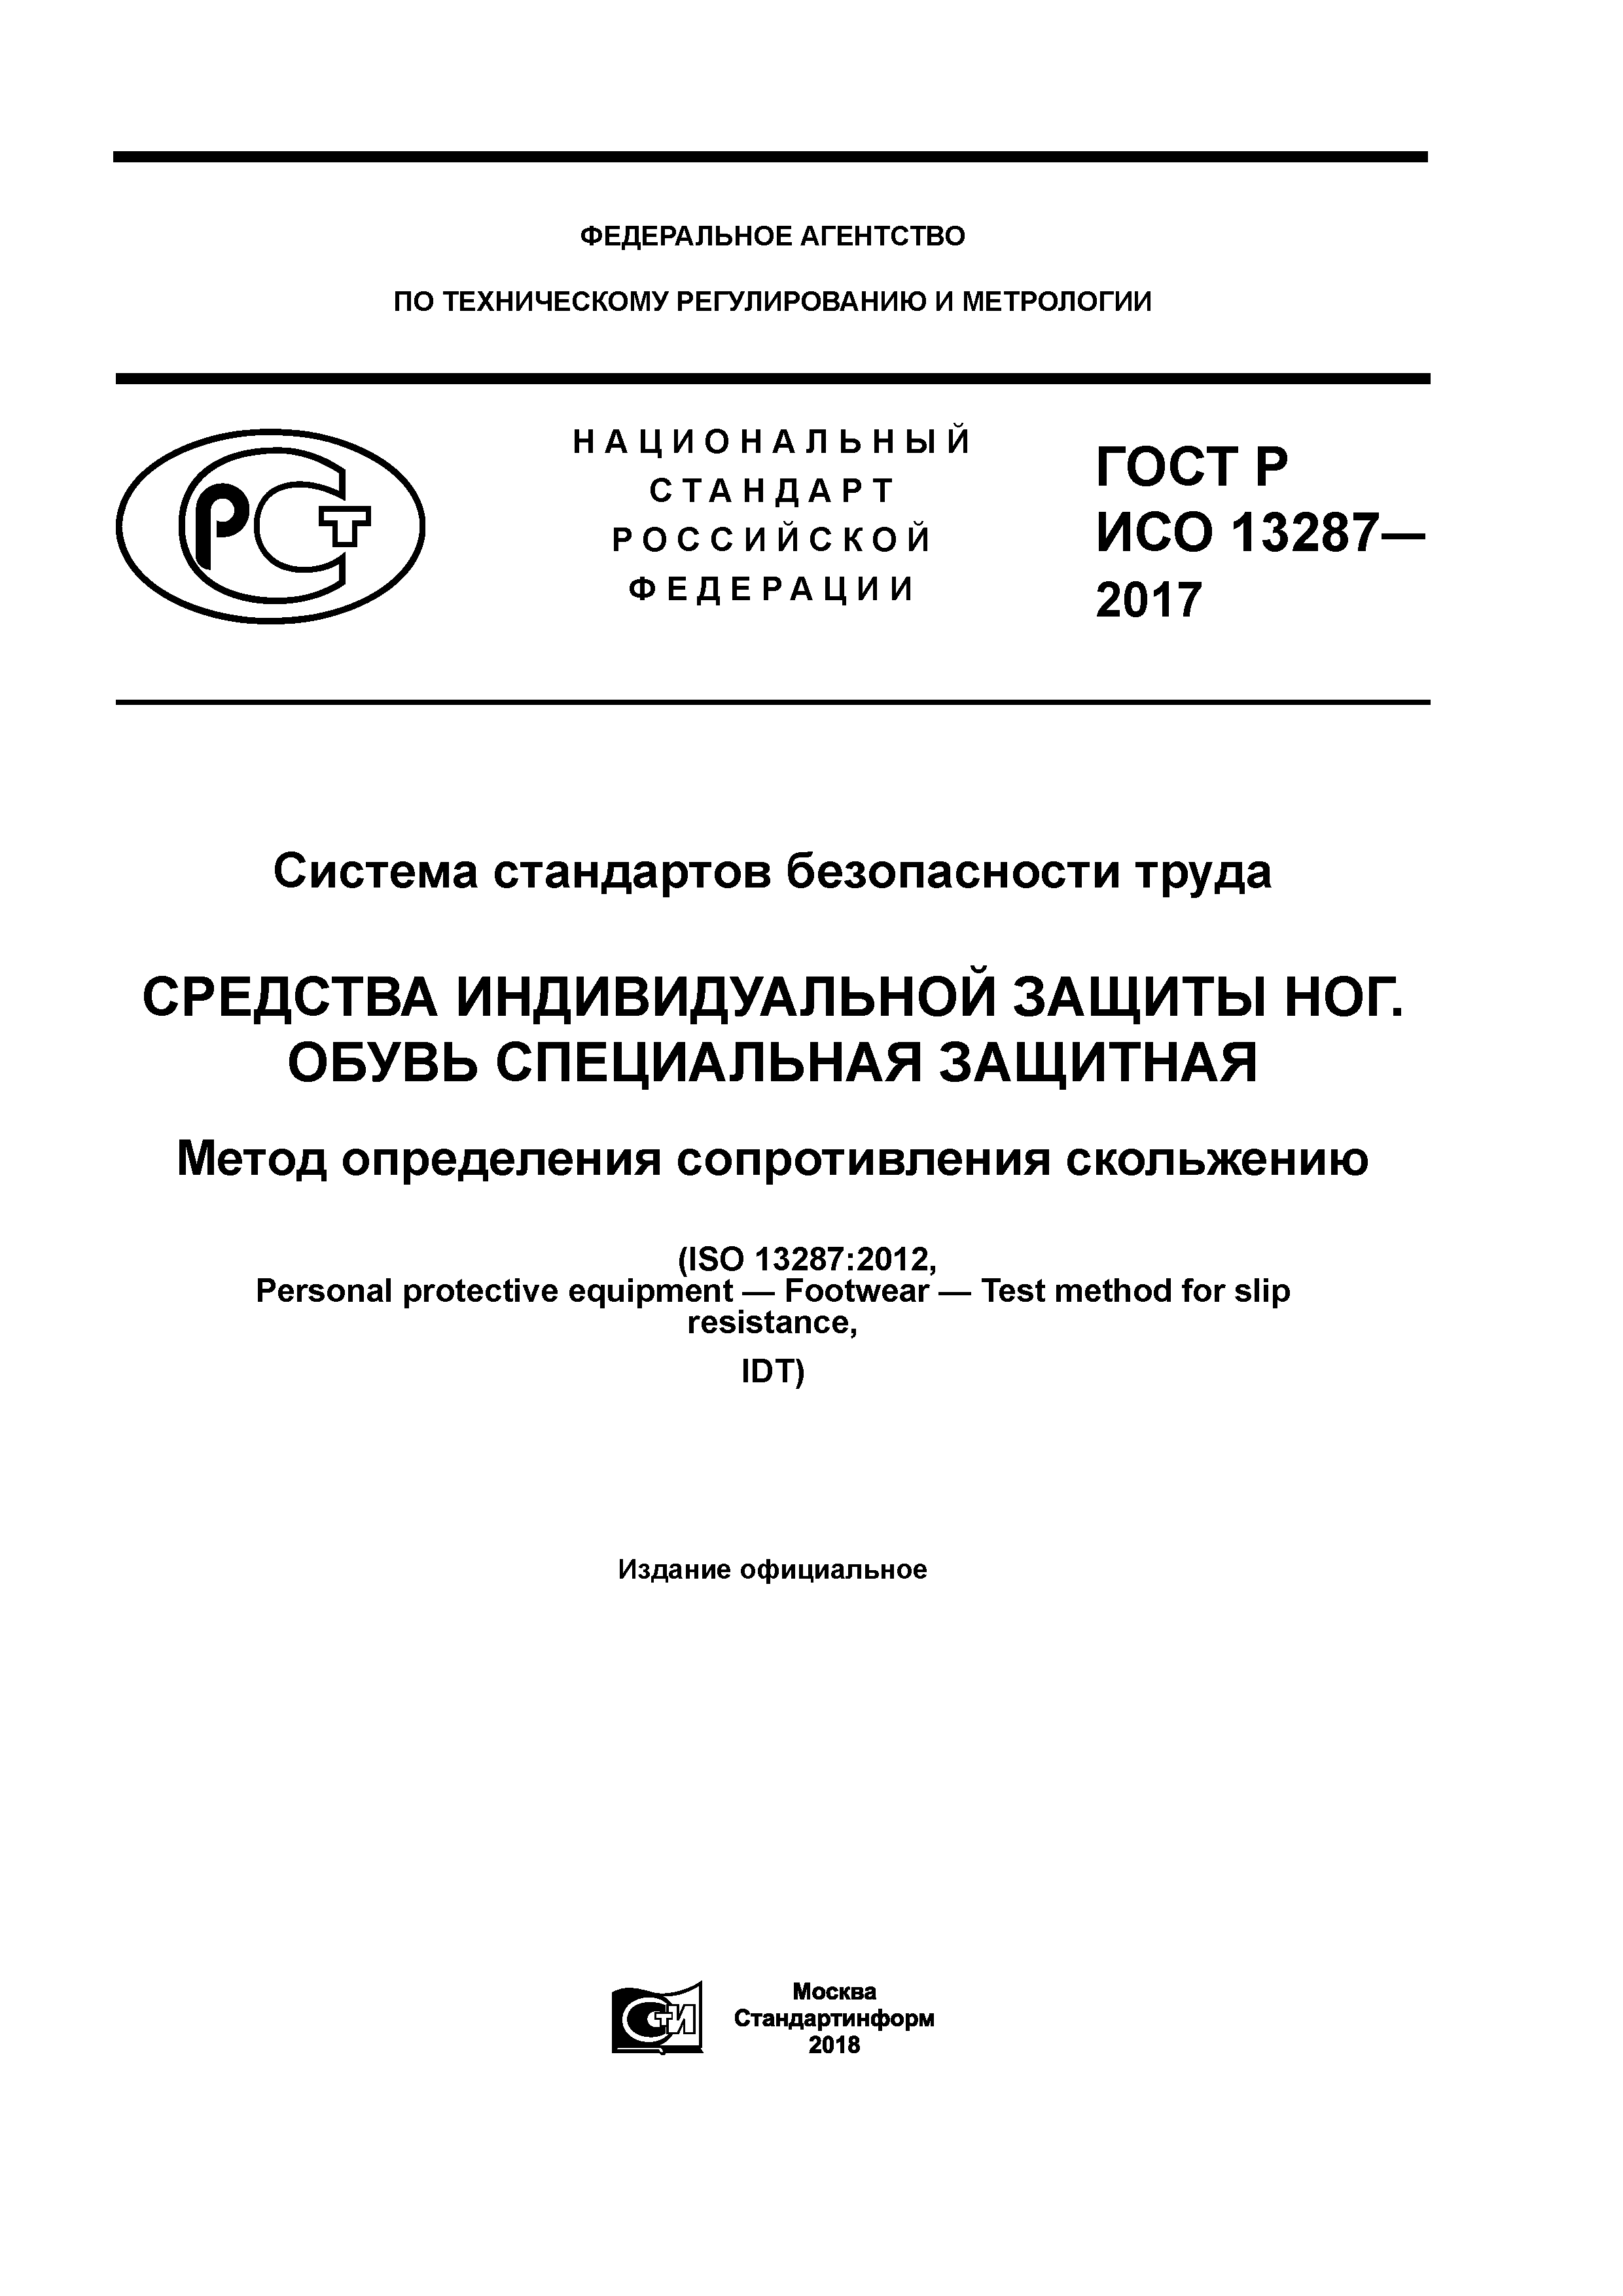 ГОСТ Р ИСО 13287-2017